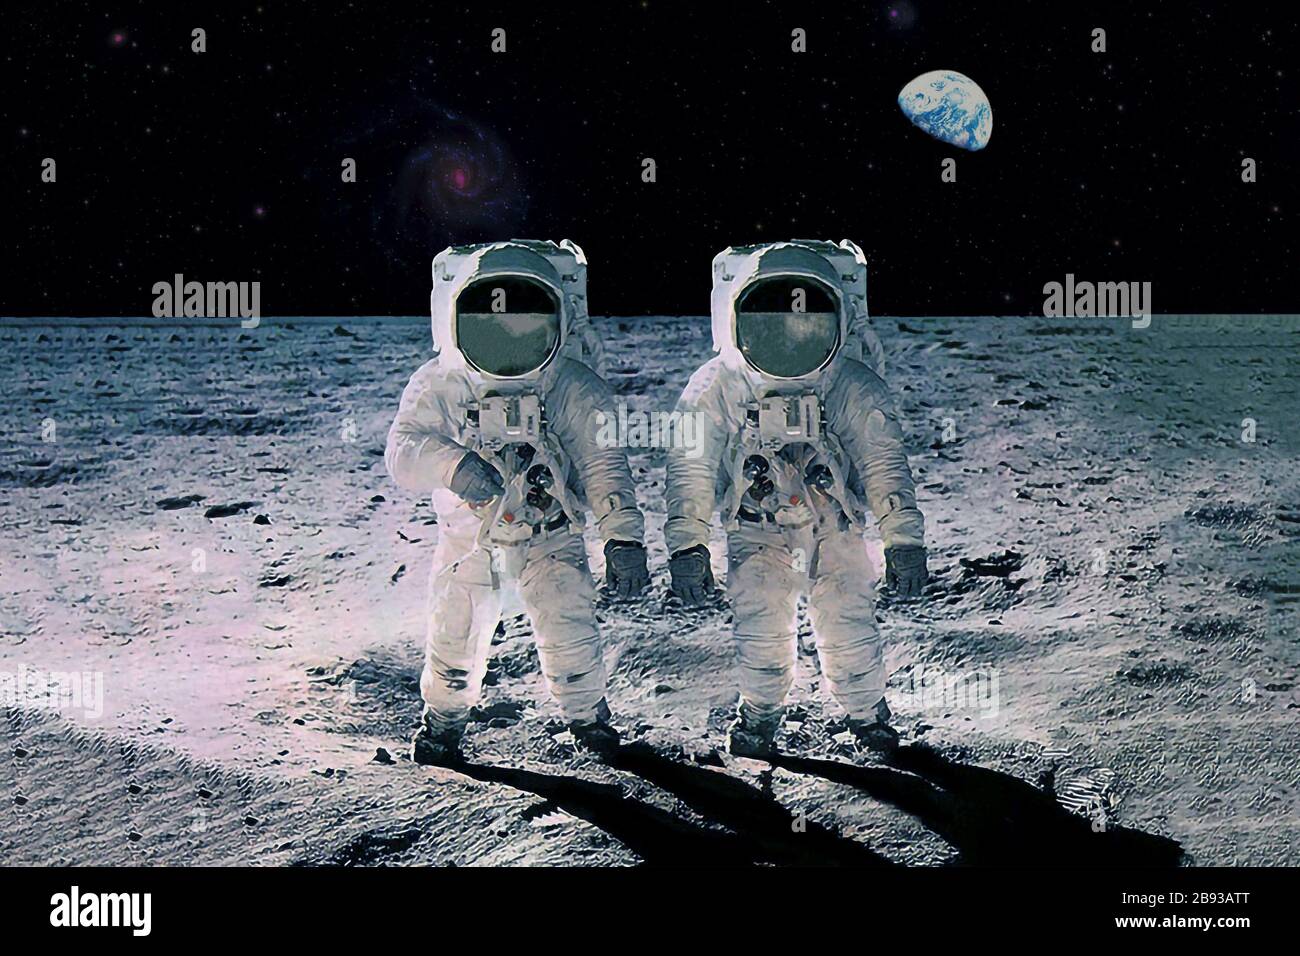 Zwei Astronauten auf dem Mond, mit Erde im Hintergrund. Elemente dieses Bildes wurden von der NASA eingerichtet. Stockfoto